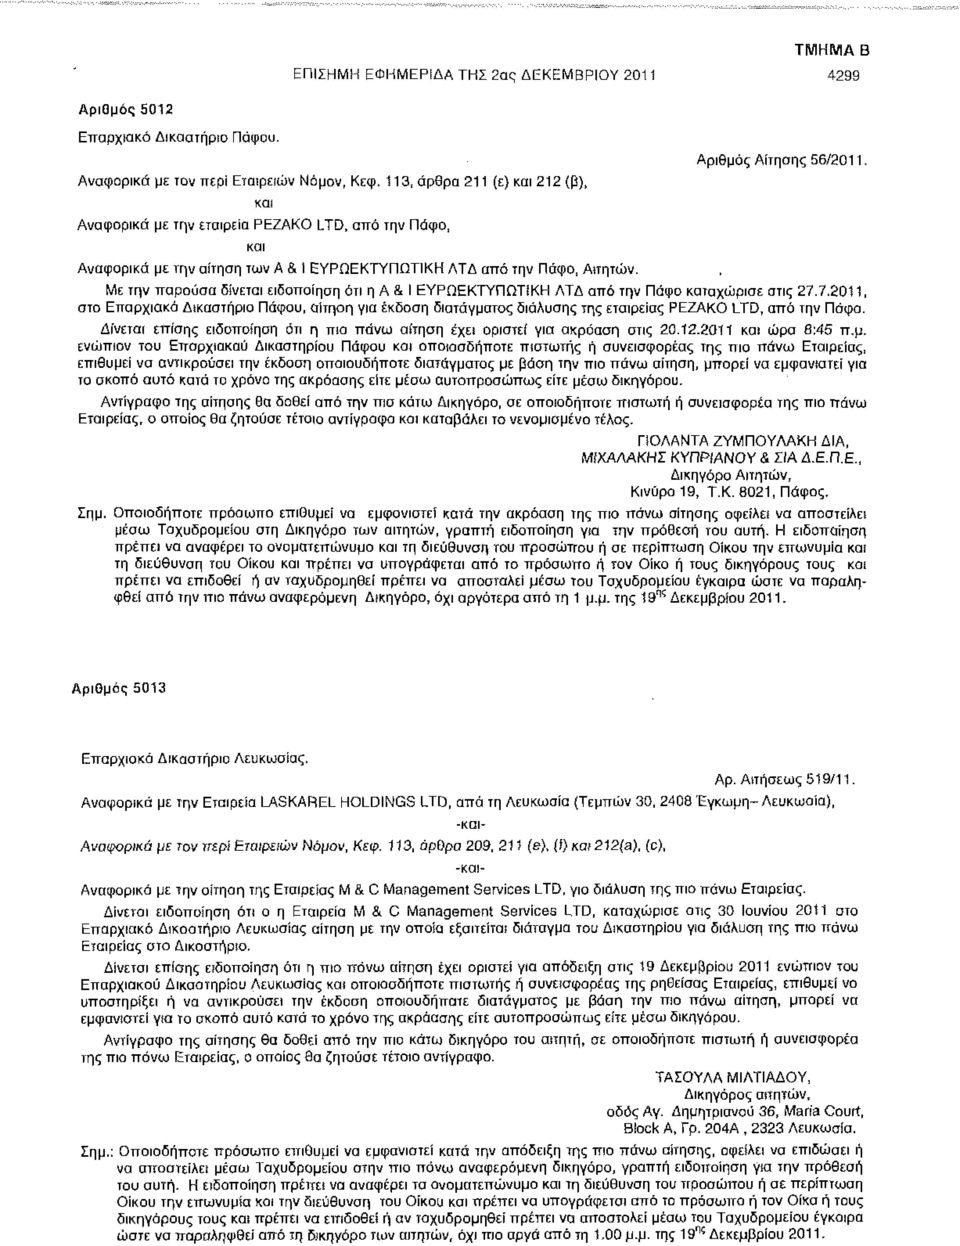 Αριθμός Αίτησης 56/2011 - Με την παρούσα δίνεται ειδοποίηση ότι η Α & Ι ΕΥΡΩΕΚΤΥΠΩΤΙΚΗ ΛΤΔ από την Πάφο καταχώρισε στις 27.